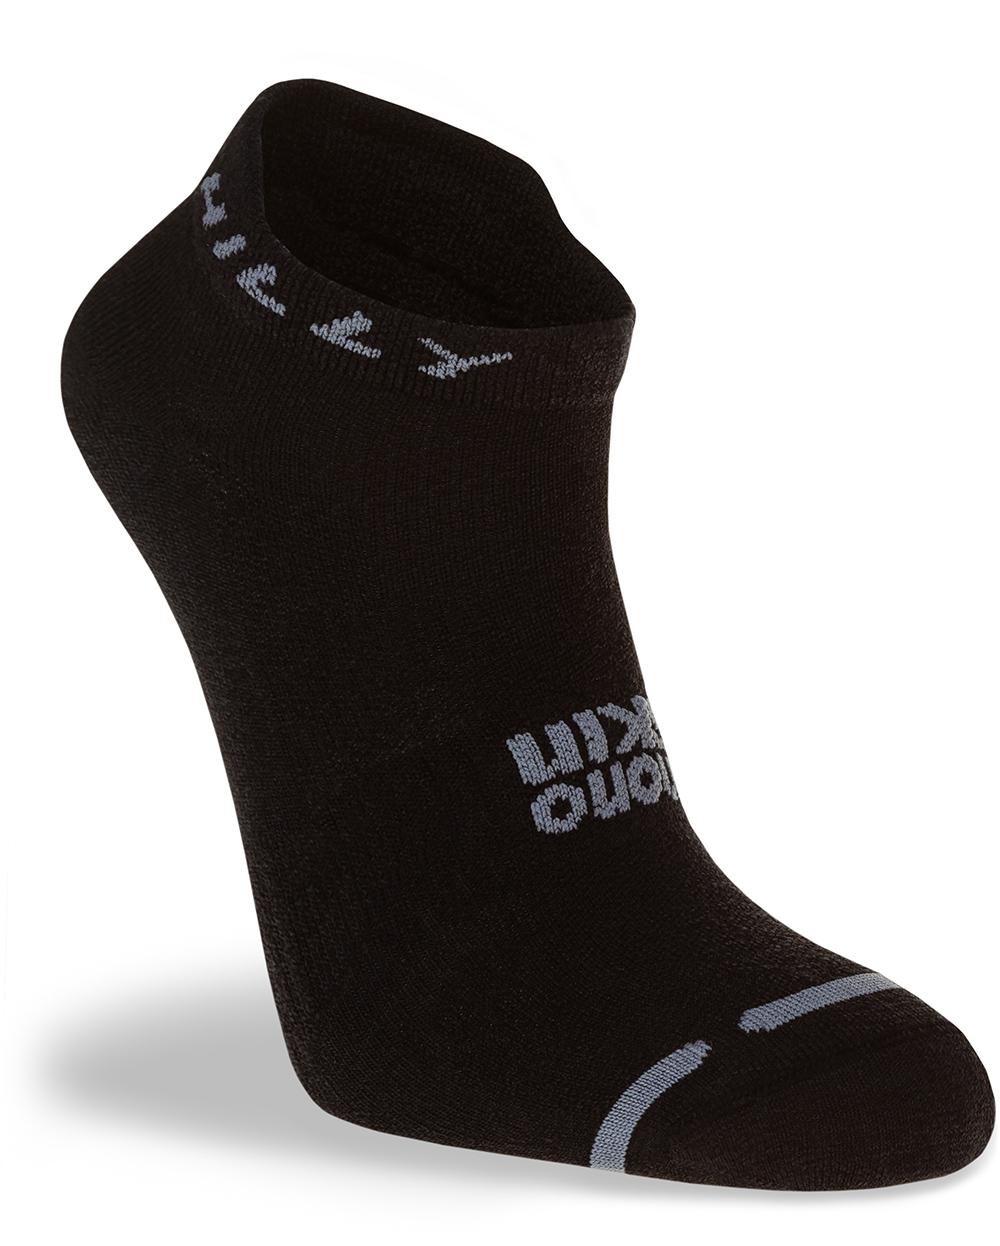 Hilly Active Socklet - Black/grey